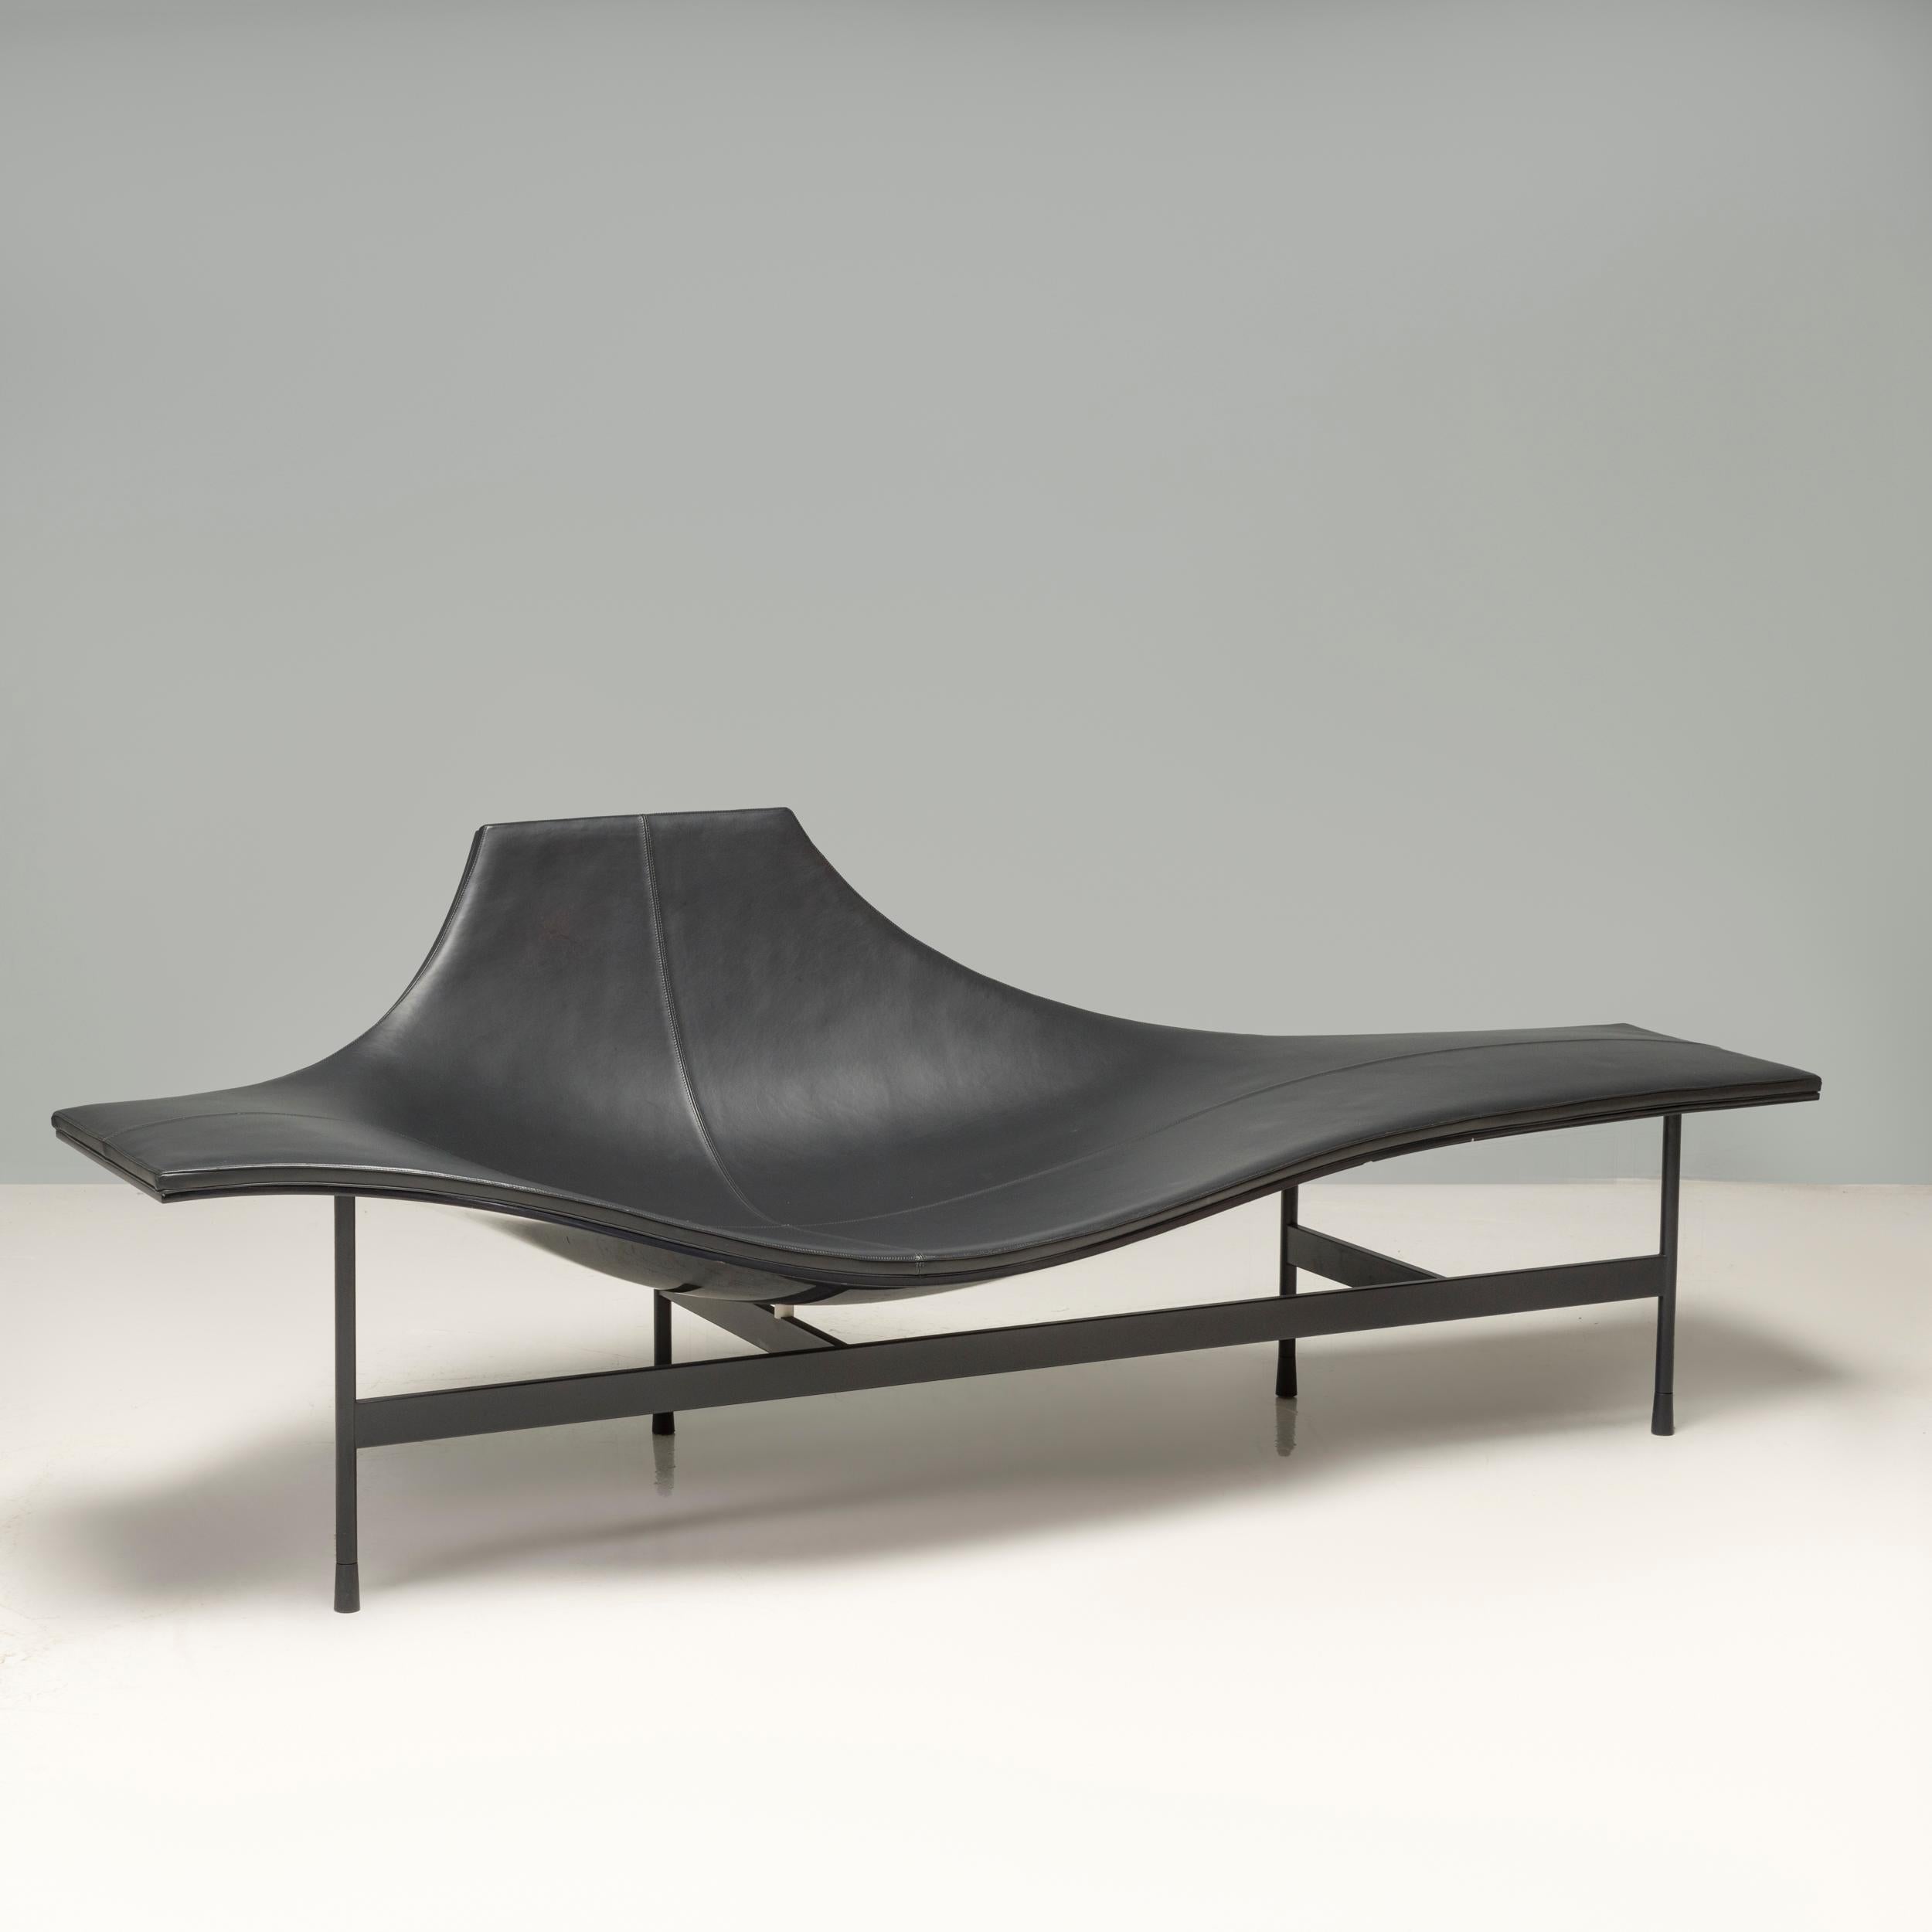 Diese schwarze Chaiselongue wurde 2008 von dem französischen Architekten, Erfinder und Designer Jean-Marie Massaud entworfen. Die fließenden Linien des Sitzes stehen in auffälligem Kontrast zu dem linearen, strukturellen Metallgestell, ebenso wie